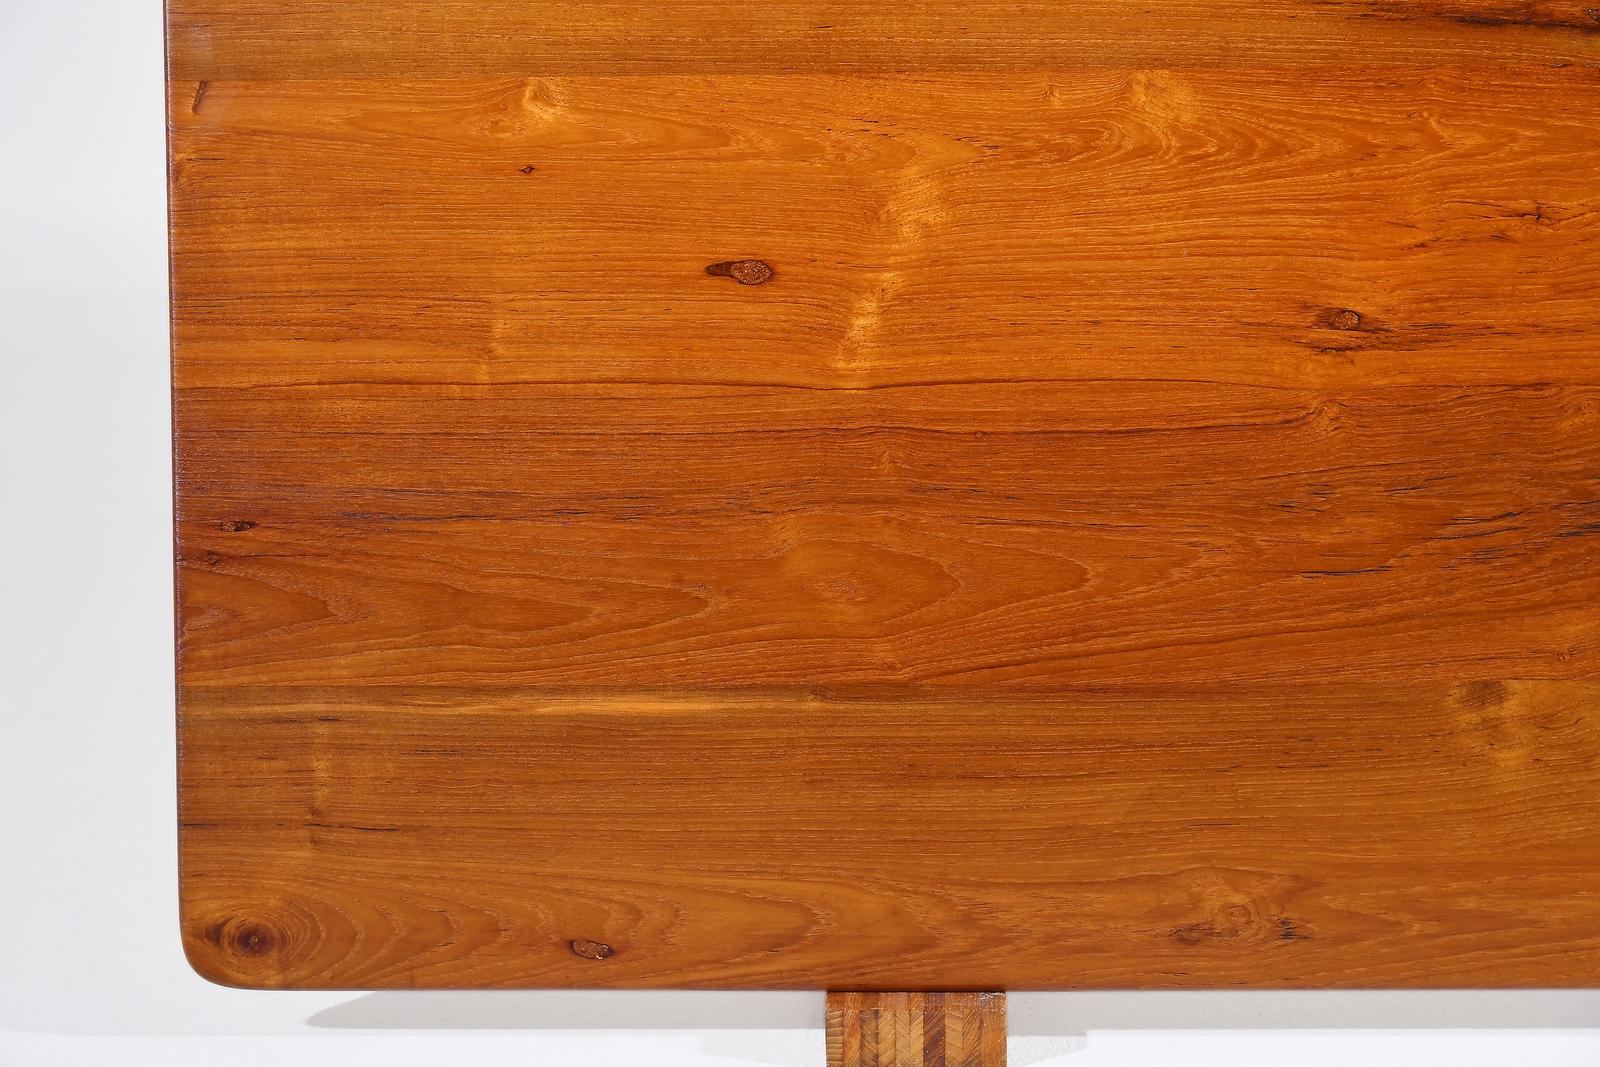 Bespoke Desk, Reclaimed Wood, Sand Cast Brass Base, by P. Tendercool For Sale 10